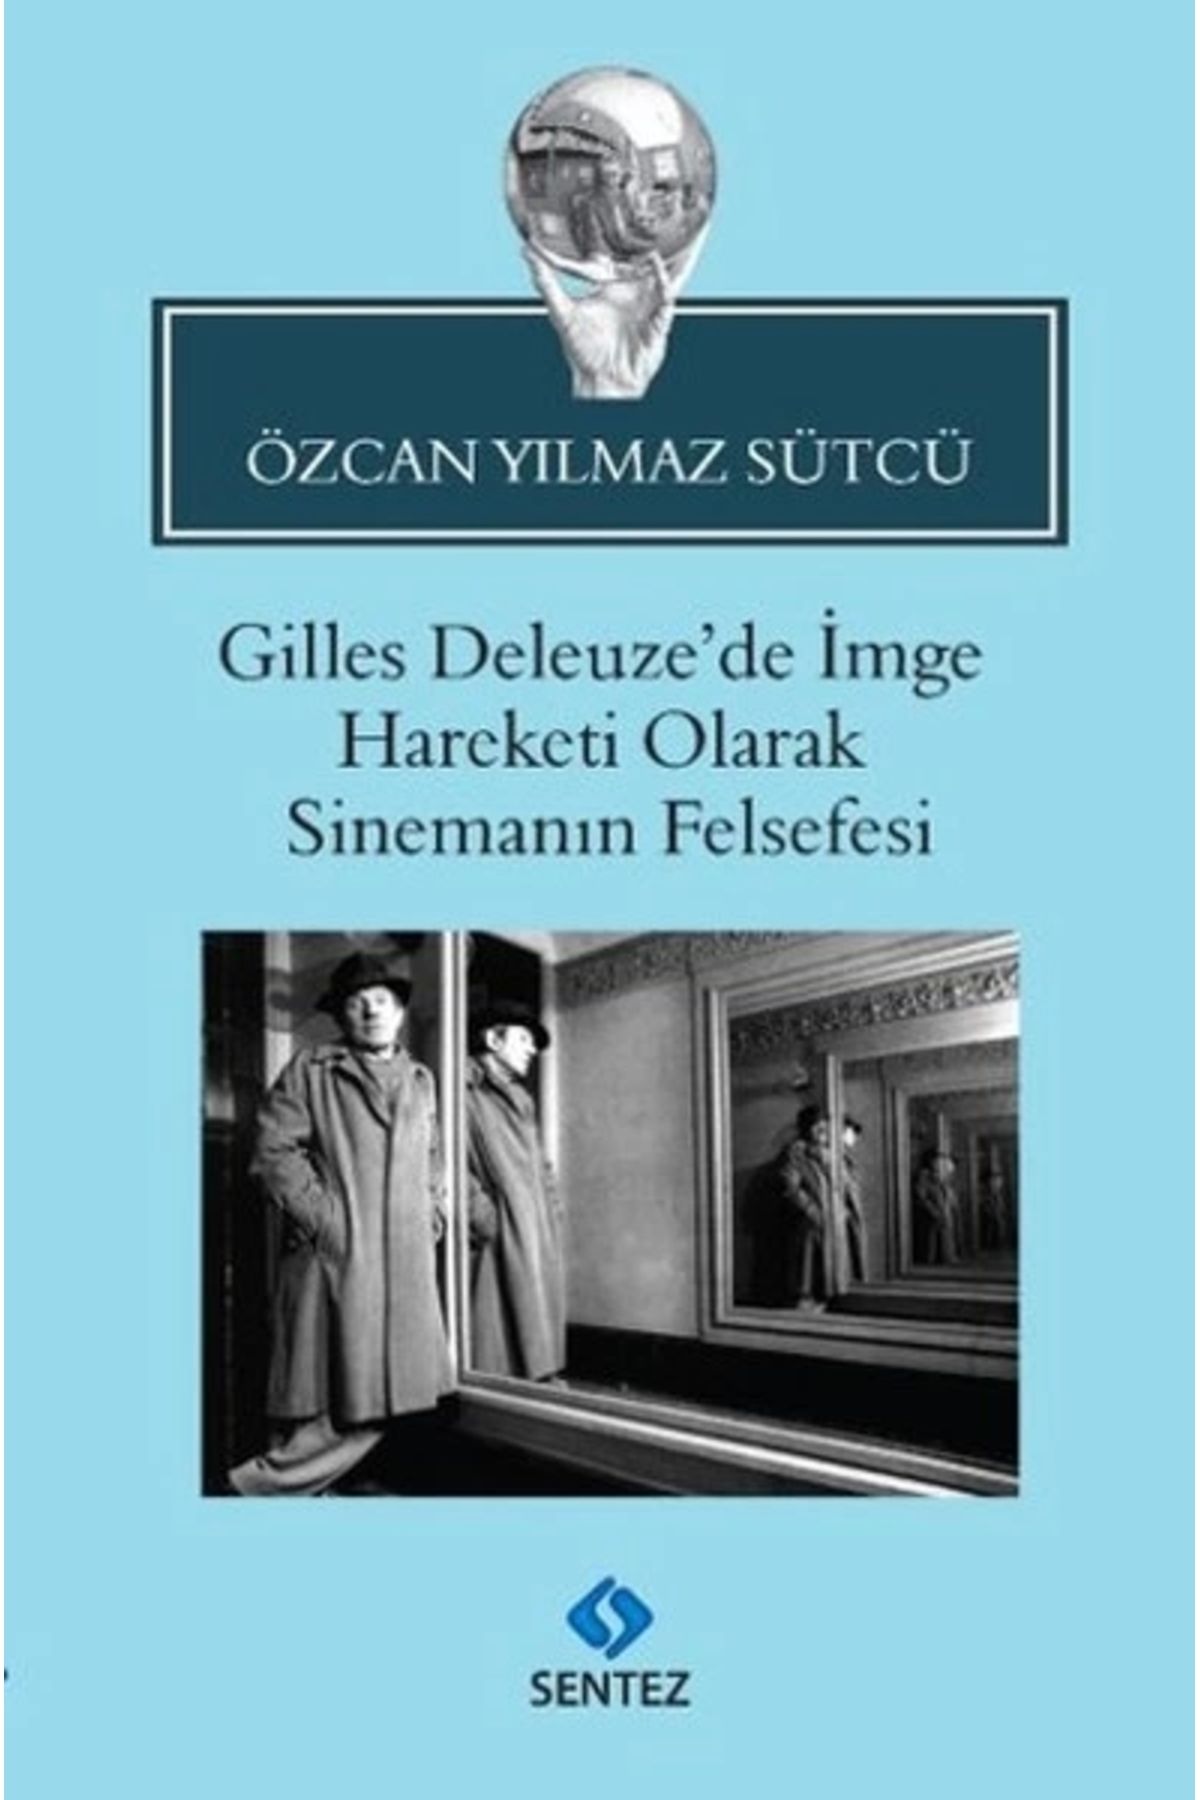 Sentez Yayınları Gilles Deleuze'de Imge Hareketi Olarak Sinemanın Felsefesi